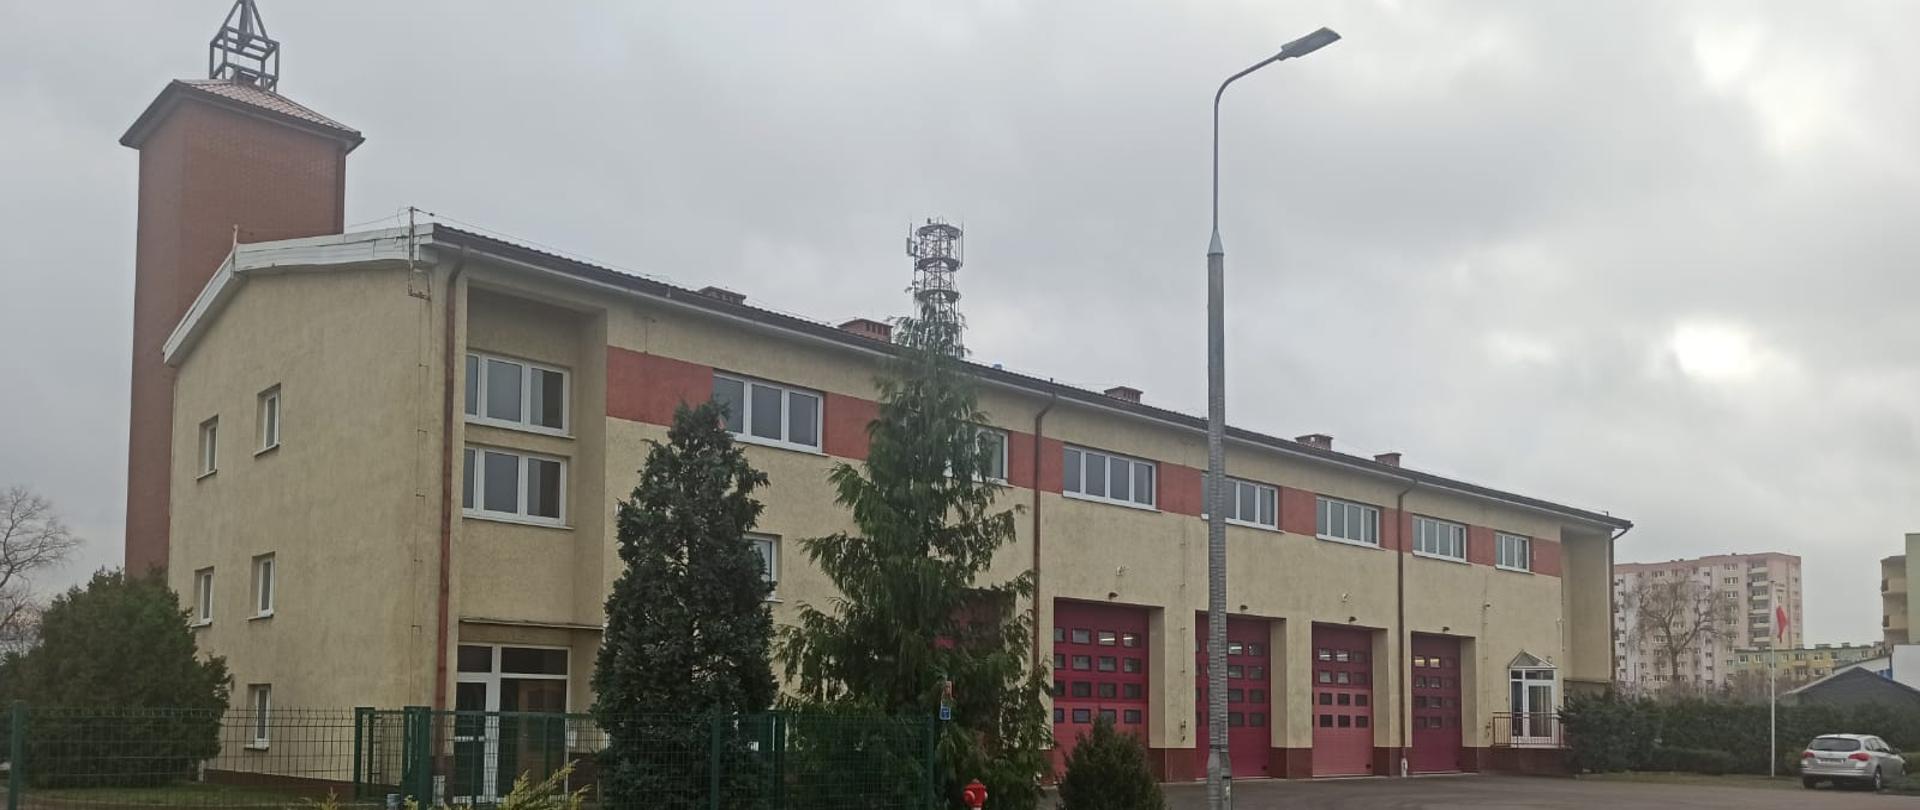 Budynek Jednostki Ratowniczo-Gaśniczej nr 2 w Bydgoszczy, elewacja frontowa.